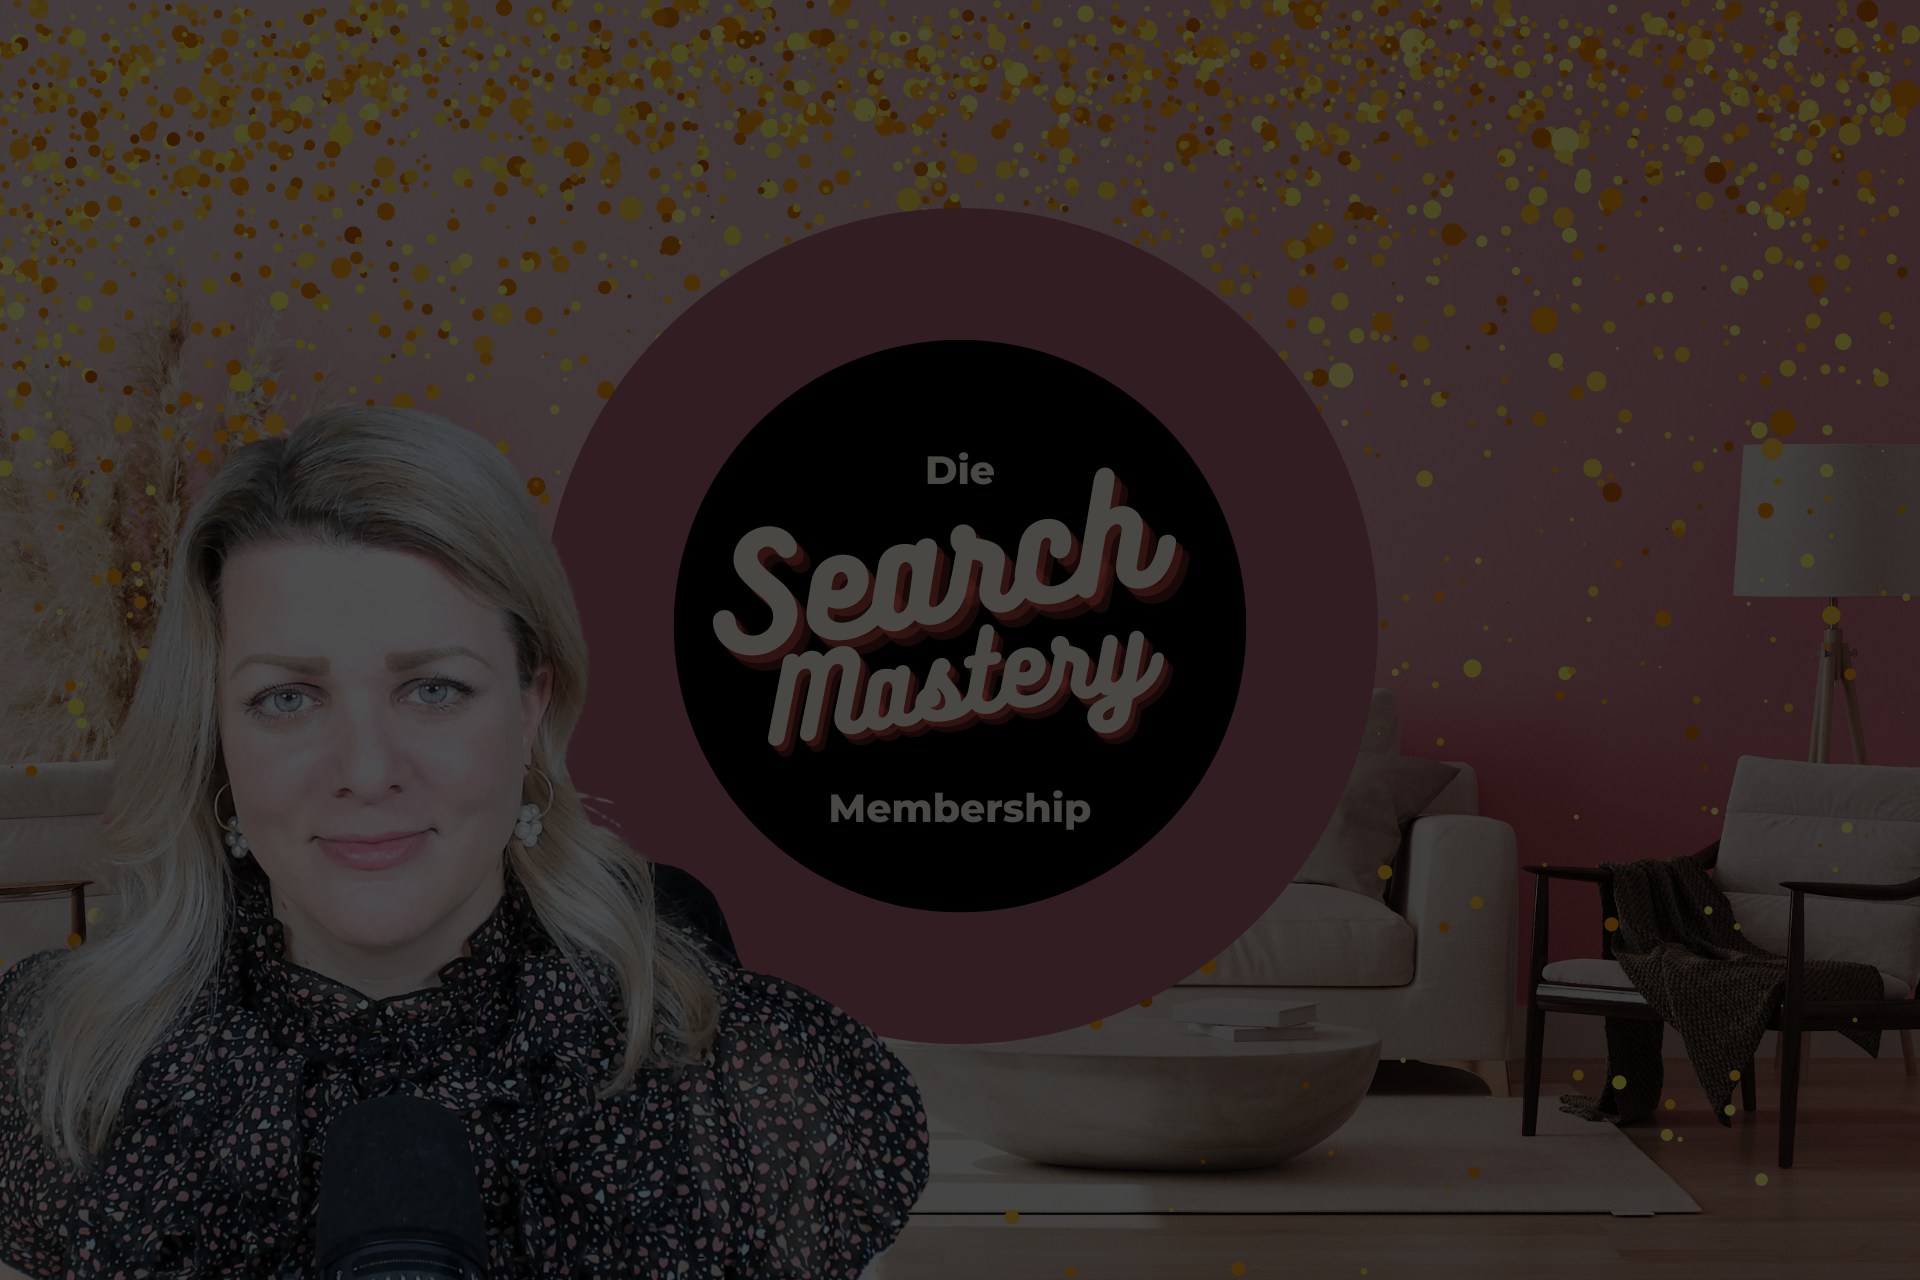 Die Search Mastery Membership